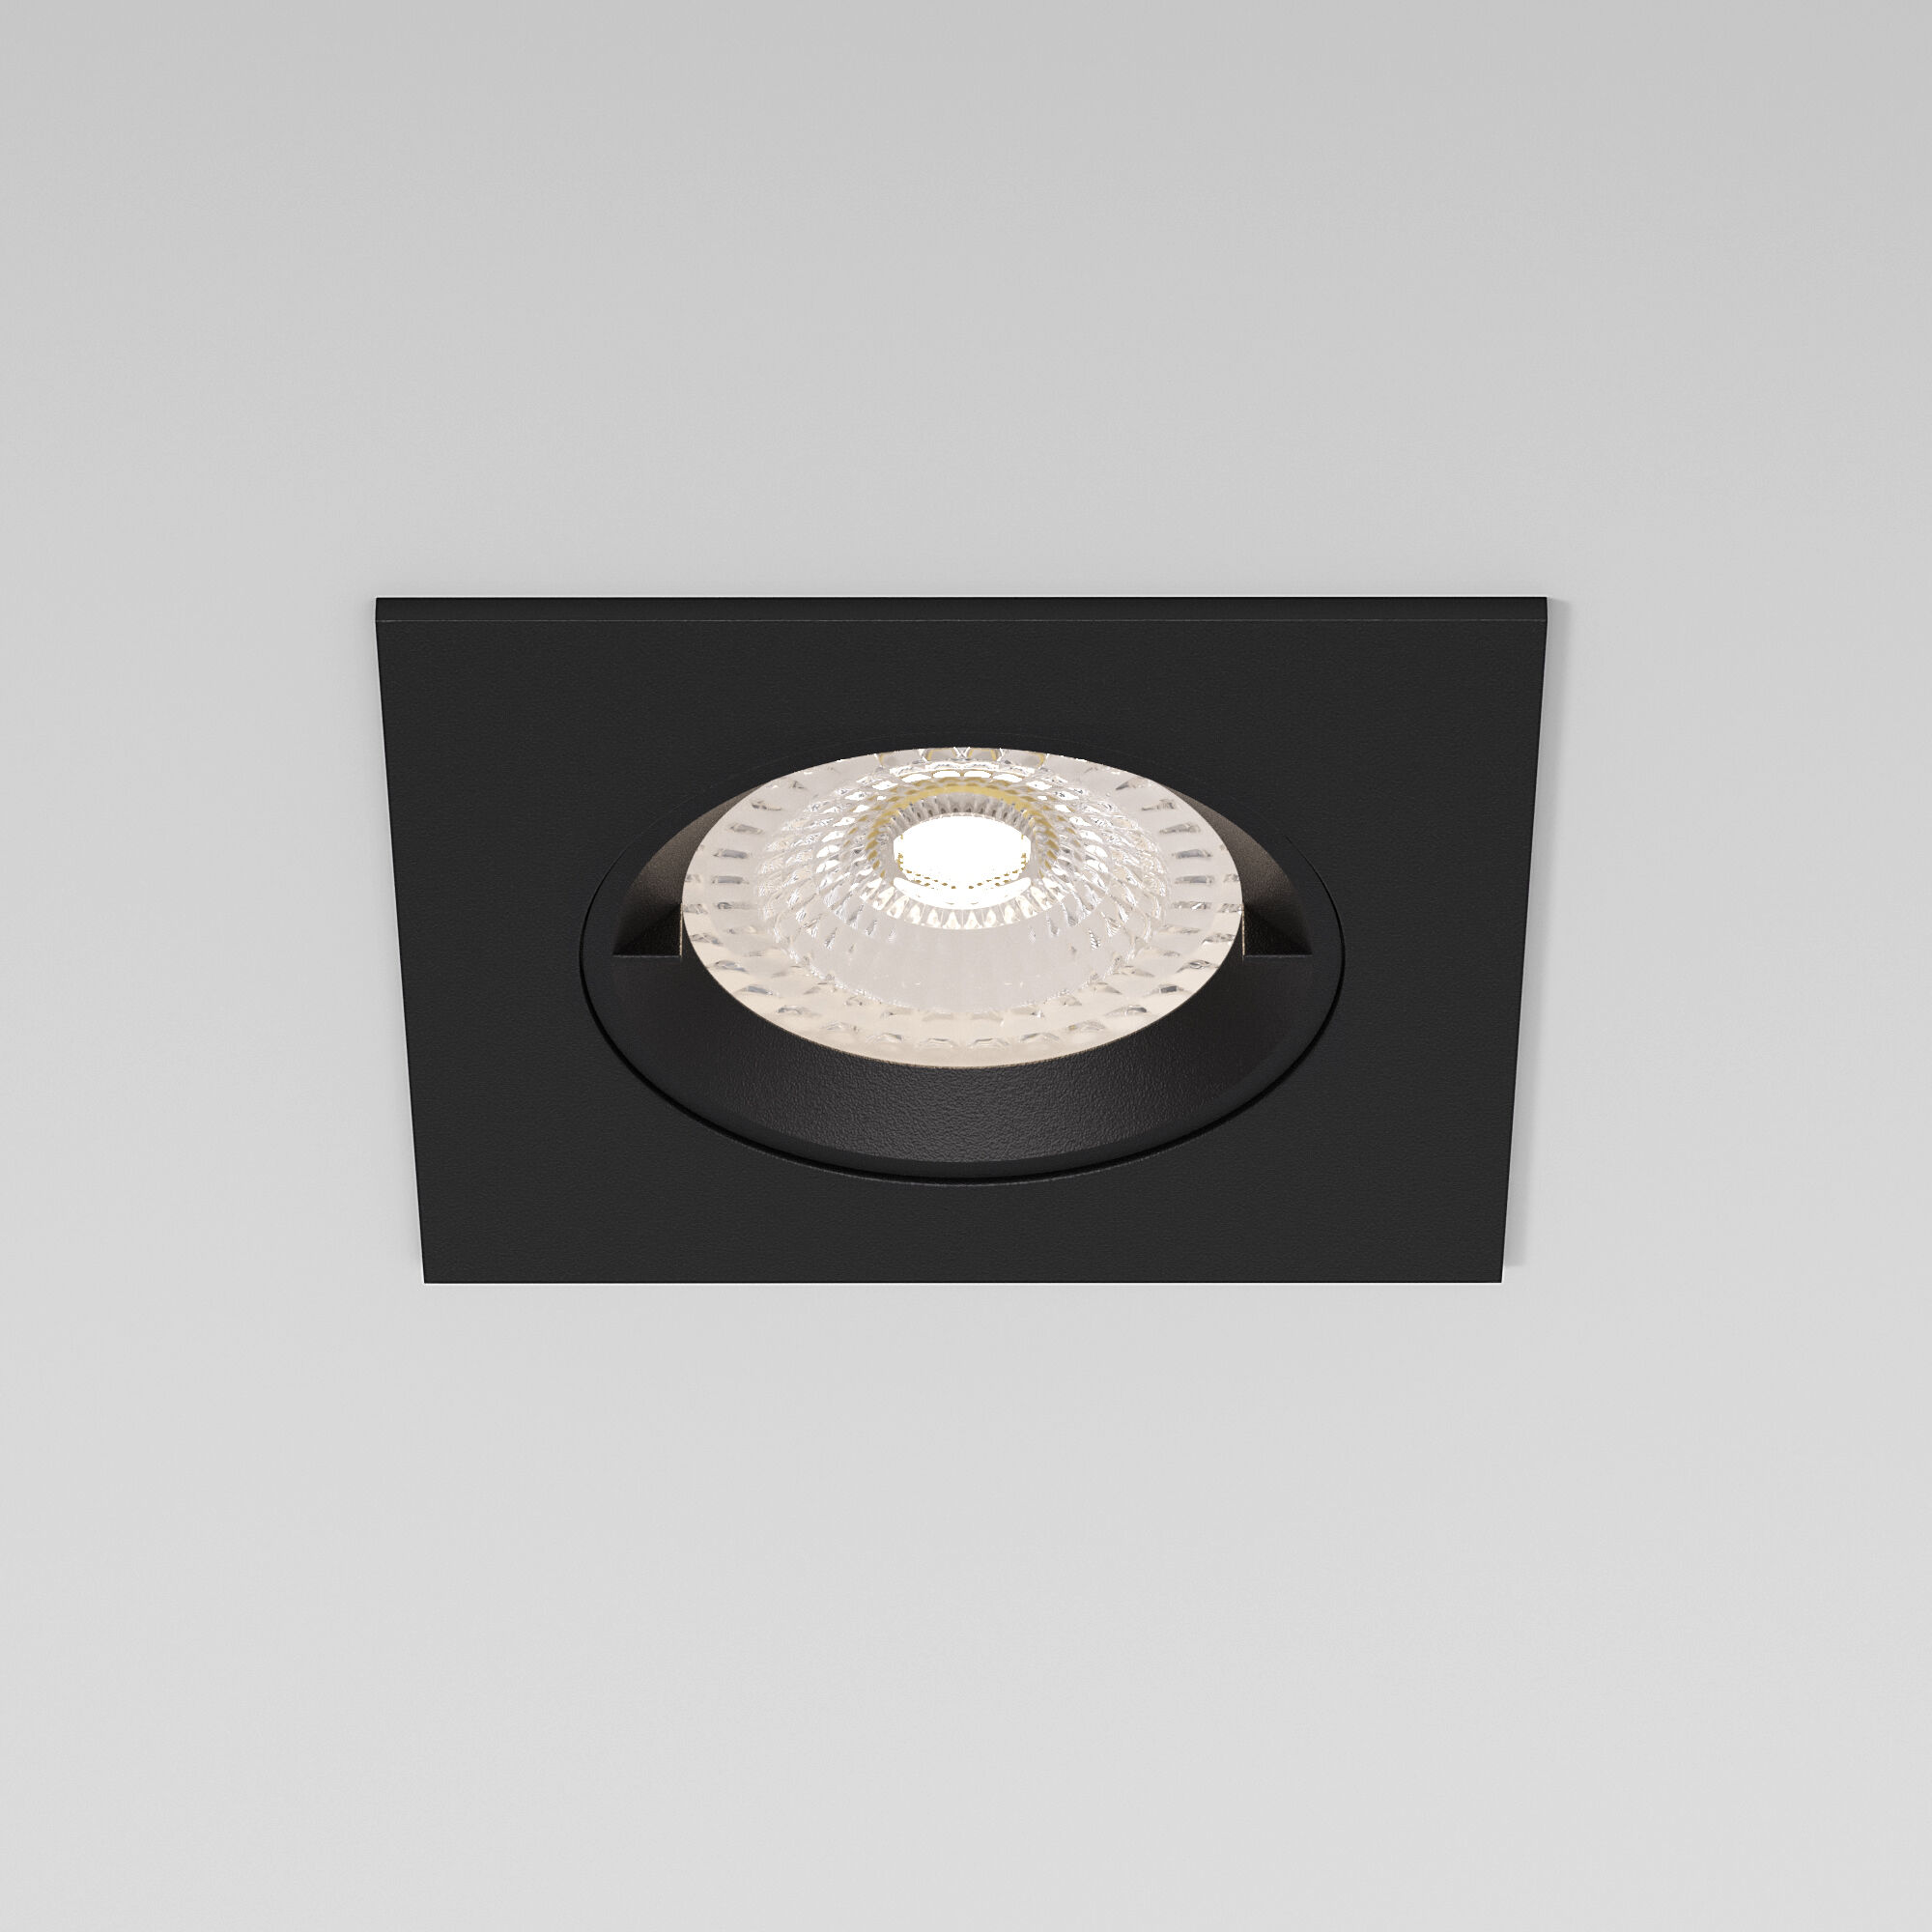 Светильник встраиваемый 8 см, Elektrostandard Minnie GU10 25057/01, черный 